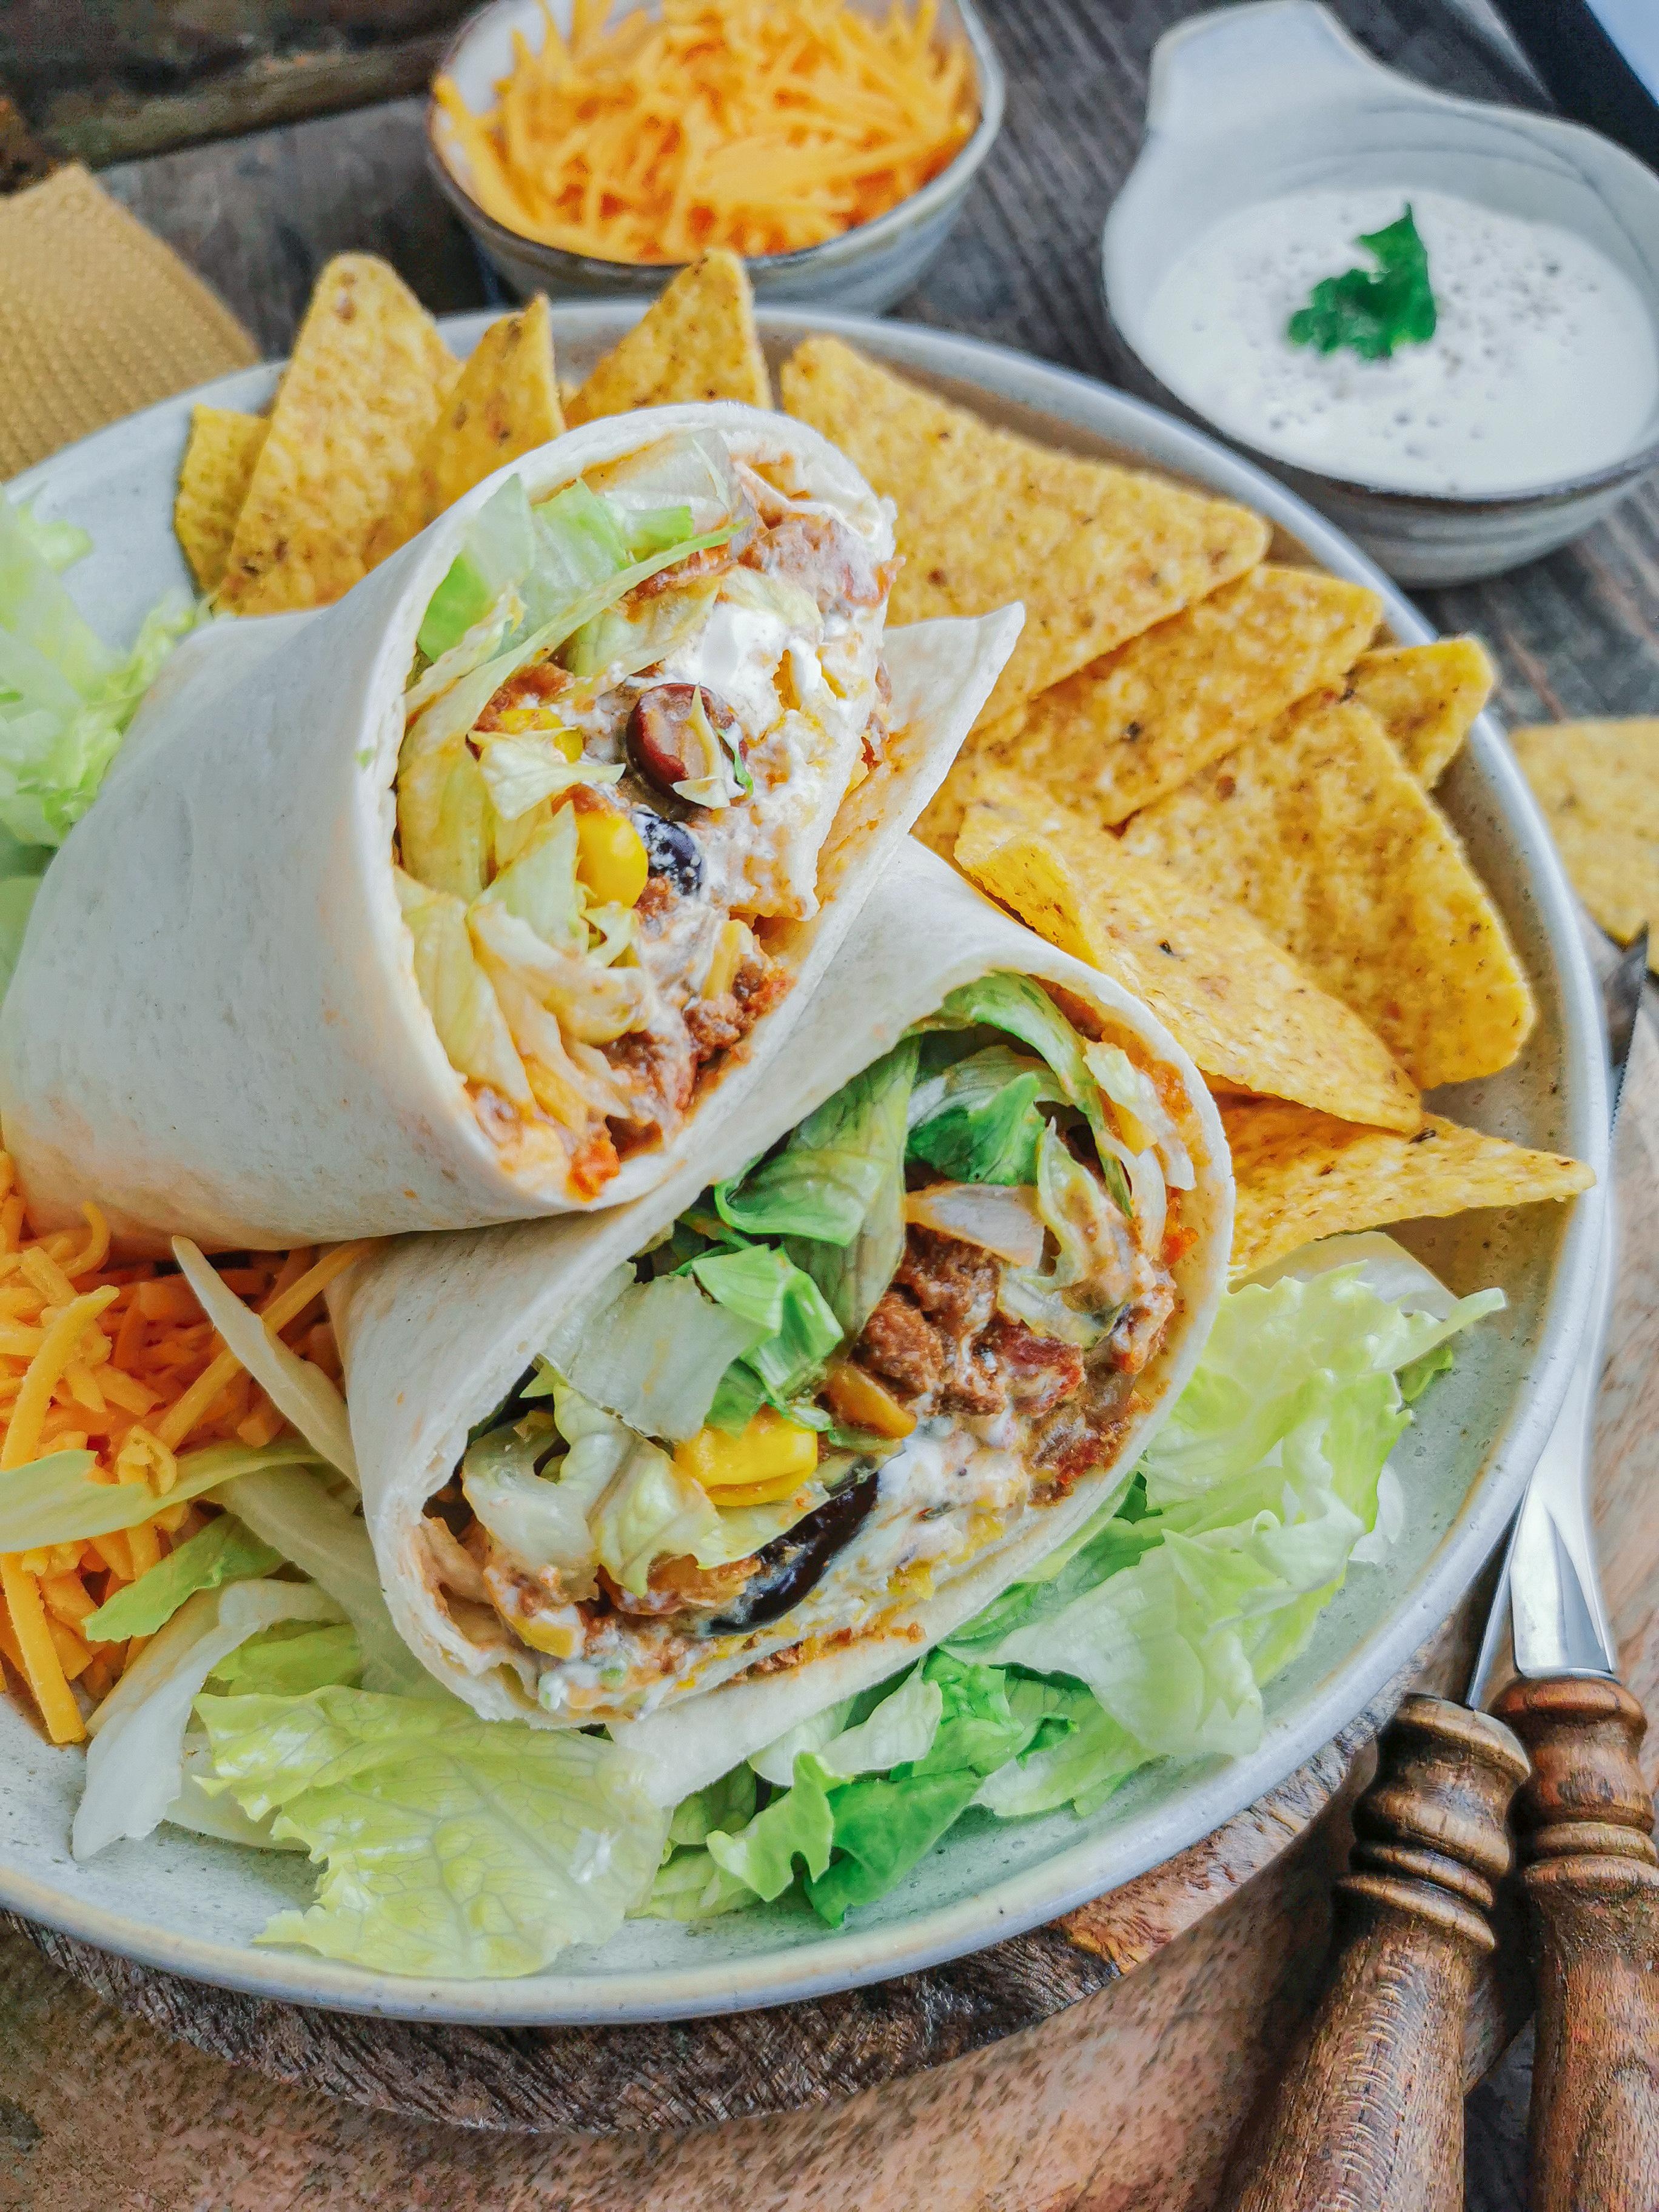 Burrito con Carne 🍲🌶️🔥😍 #burrito #wraps #chiliconcarne #soulfood #lecker #frischundlecker 